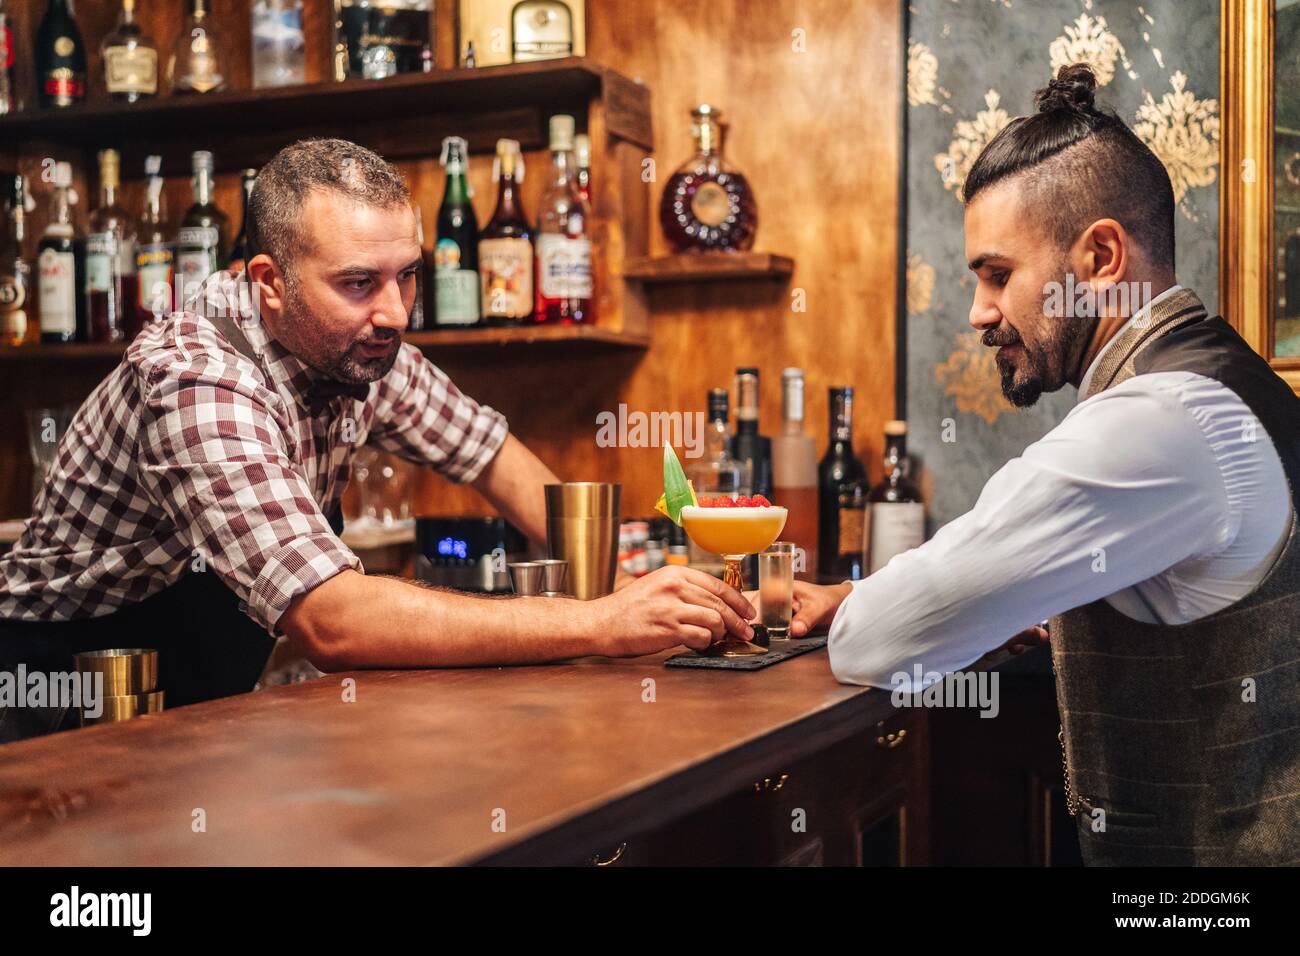 aged bartender